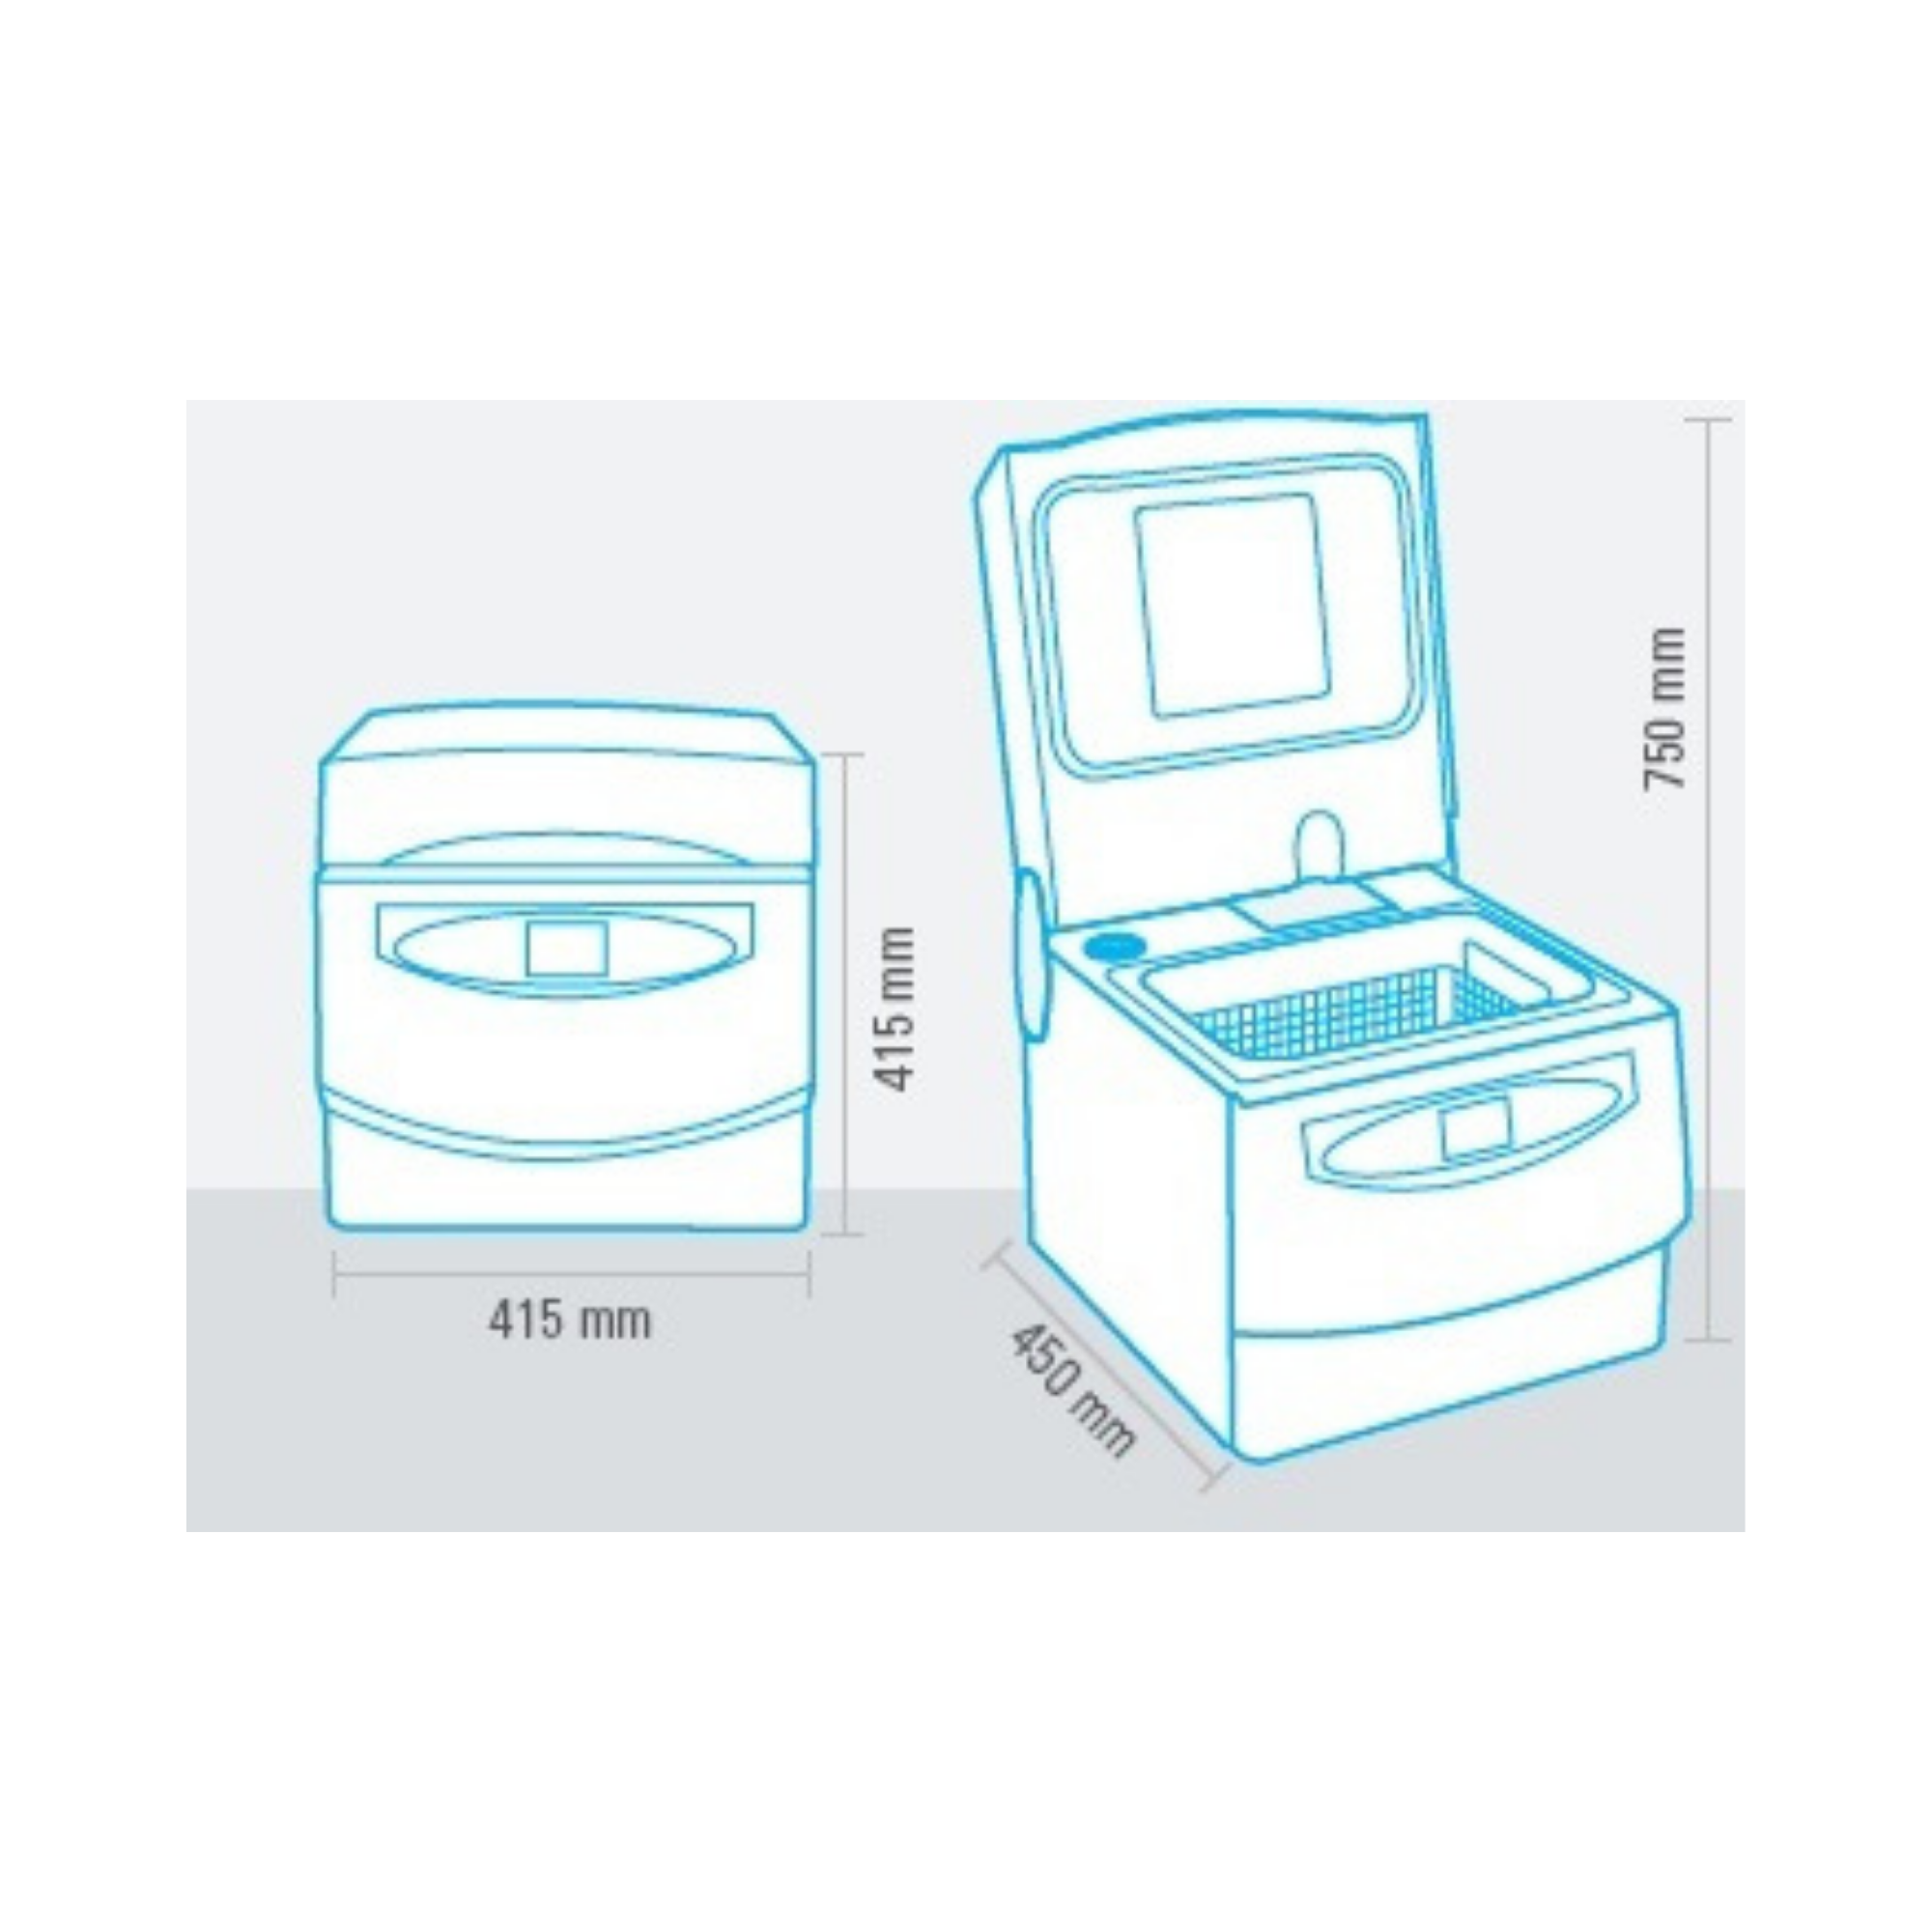 Multisteril - Dispositif automatique pour désinfection, ultrasons et séchage sans pompe